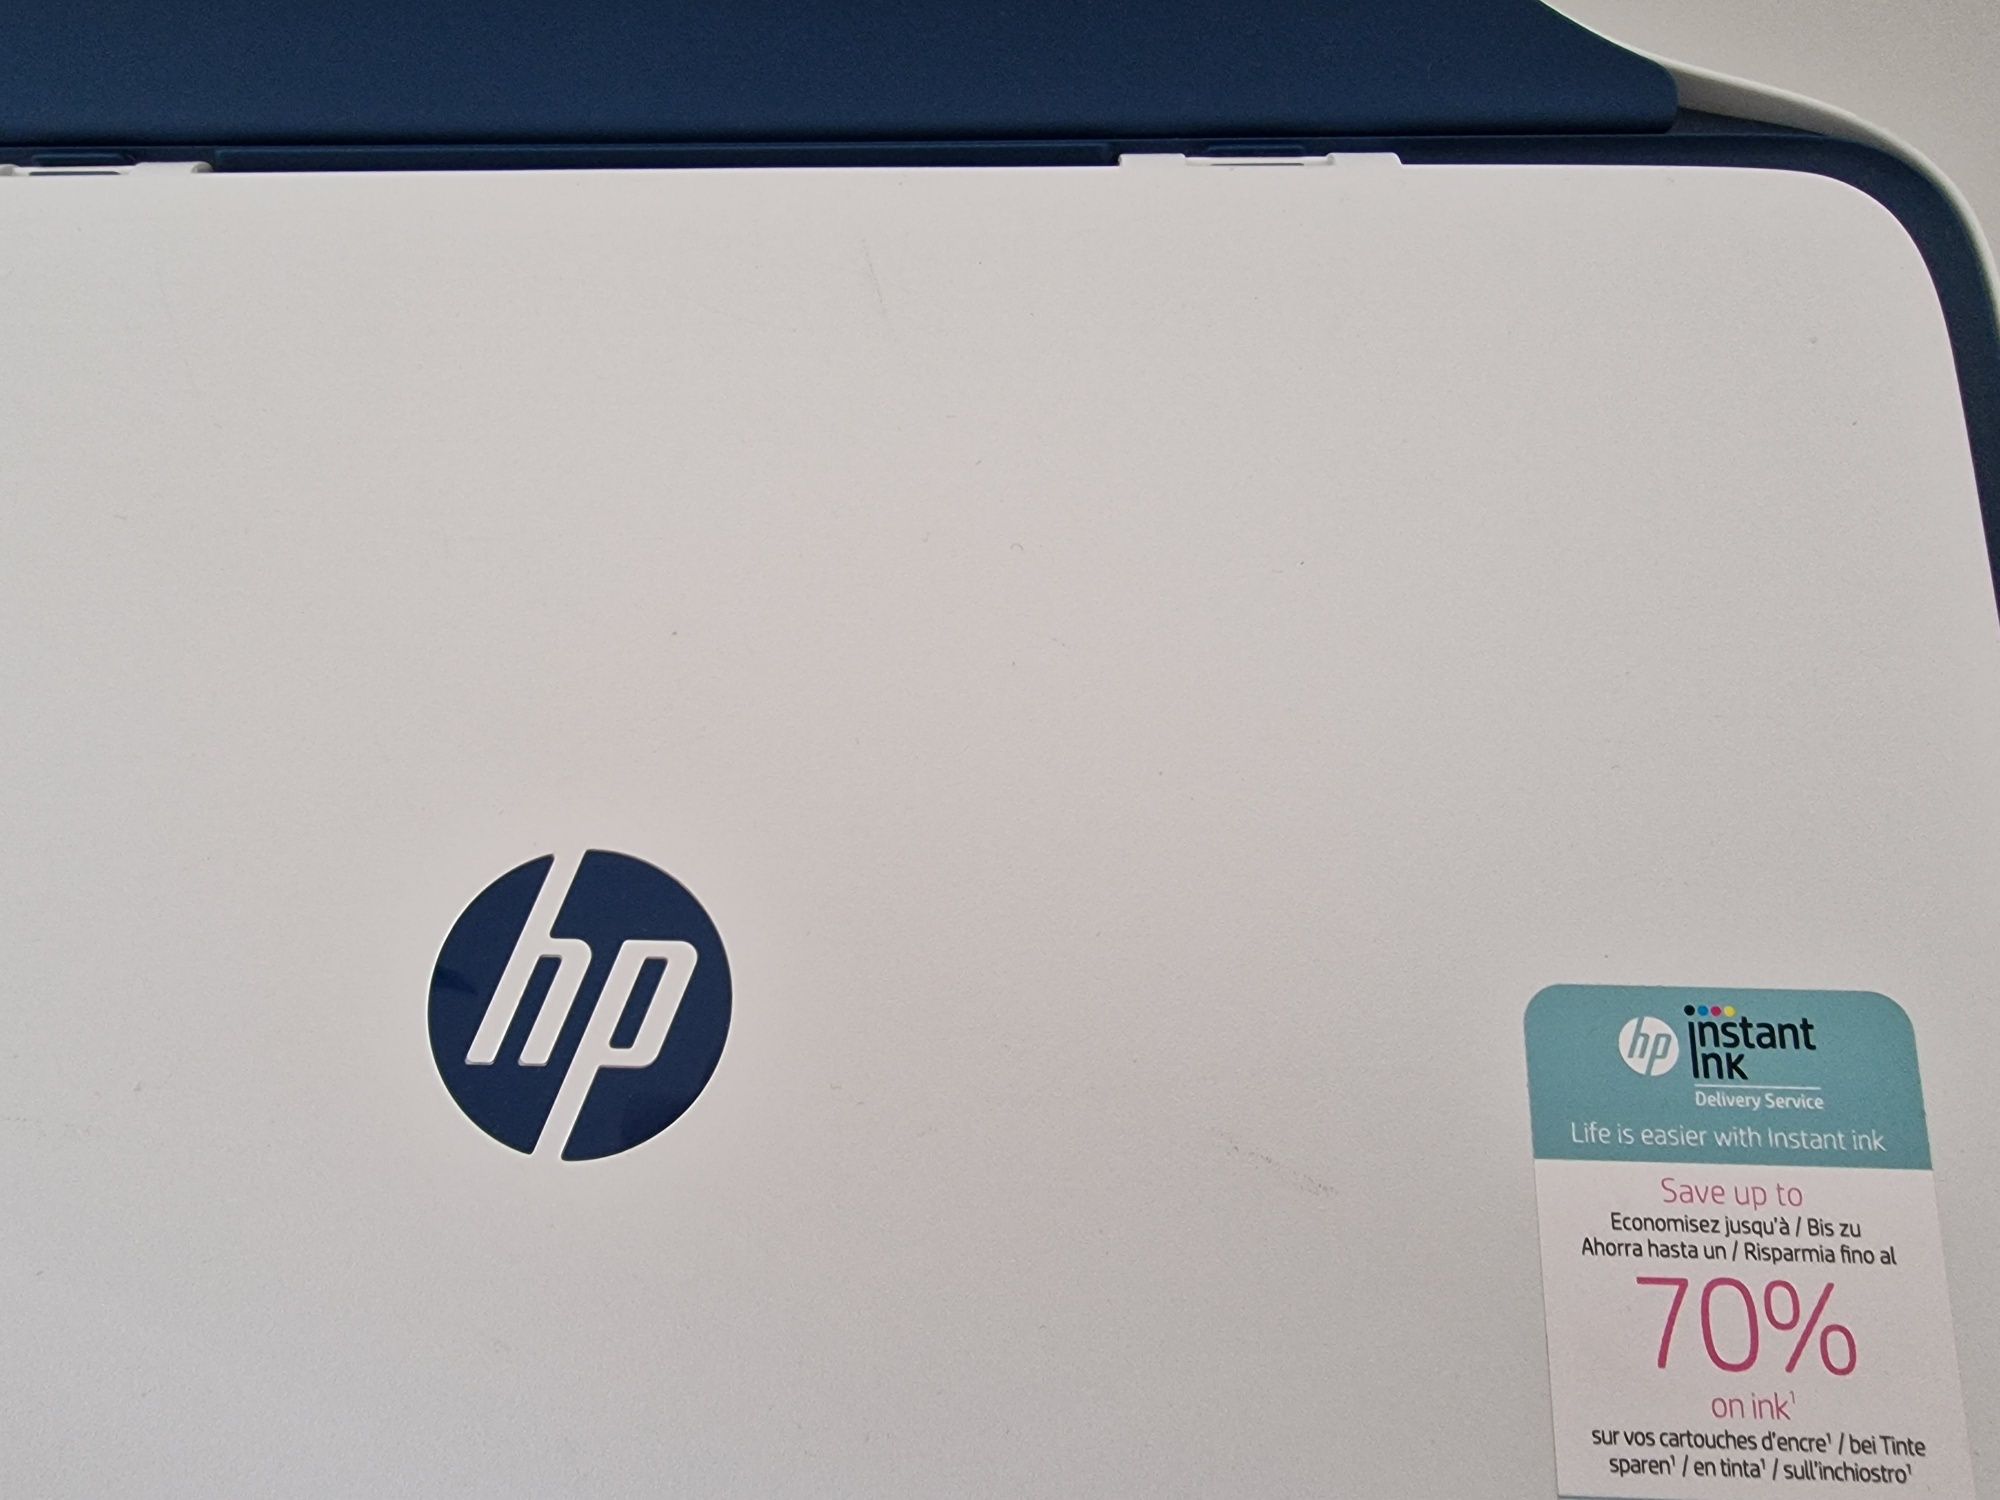 Impressora HP Desk Jet 2721